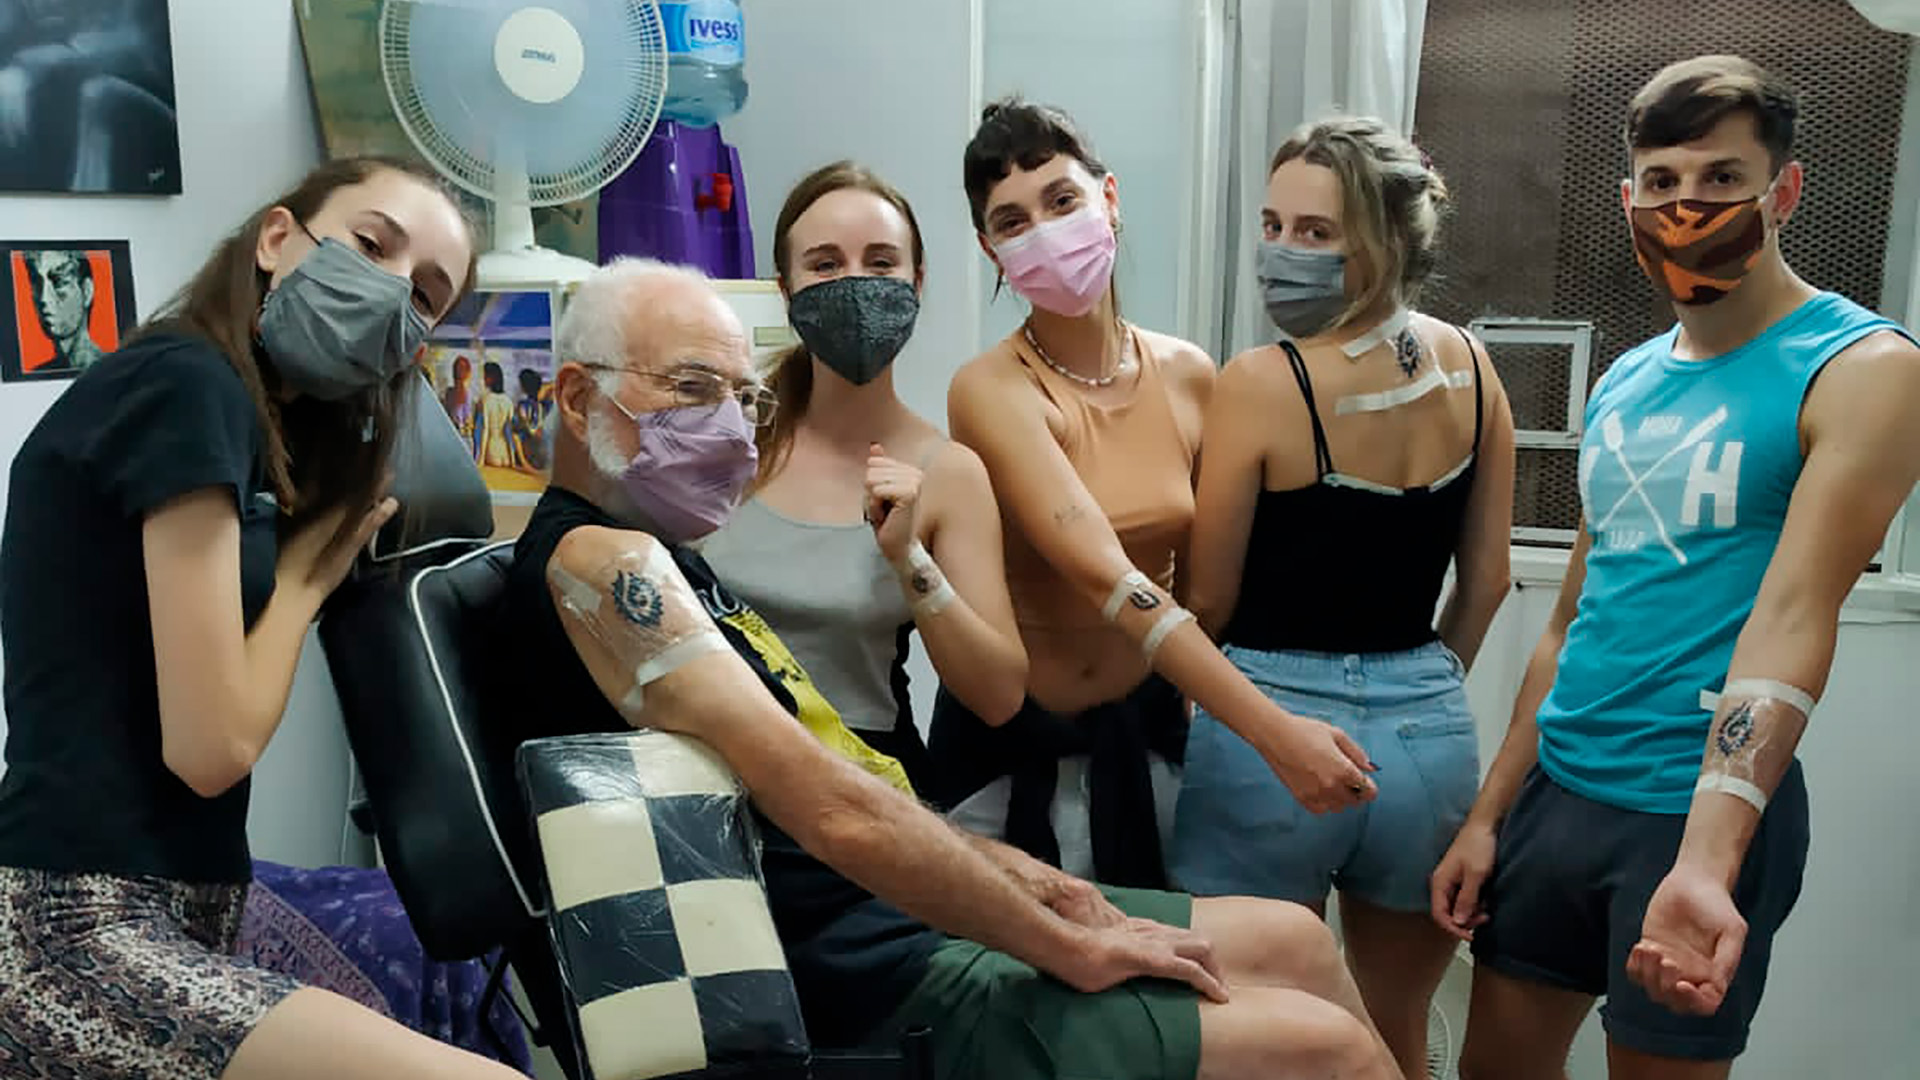 El abuelo de 86 años que se tatuó por primera vez por pedido de sus nietos: “¡Qué no haría por ellos!”